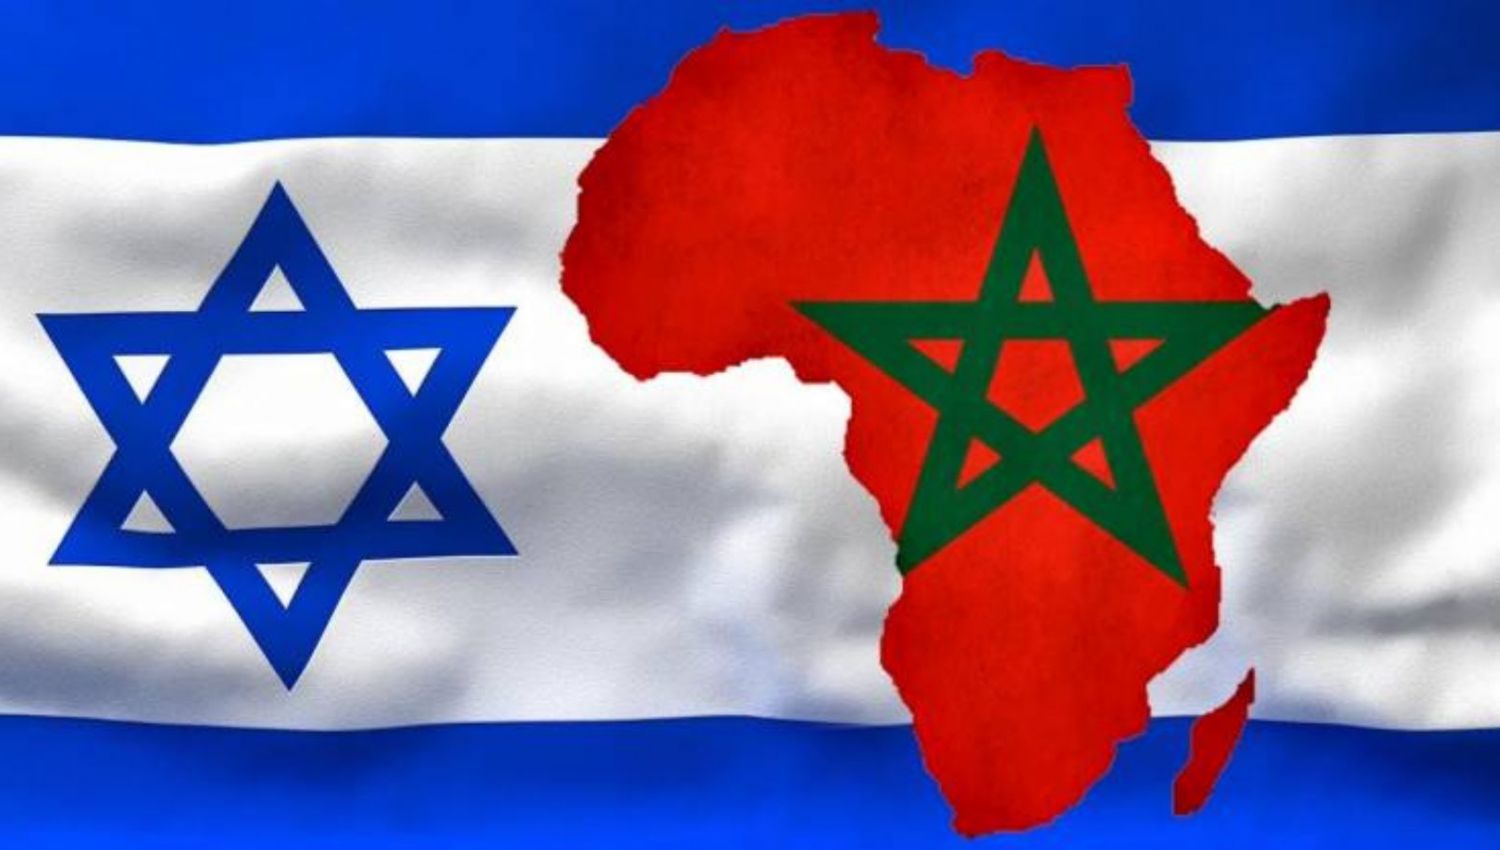 "إسرائيل" والمغرب إلى التطبيع!